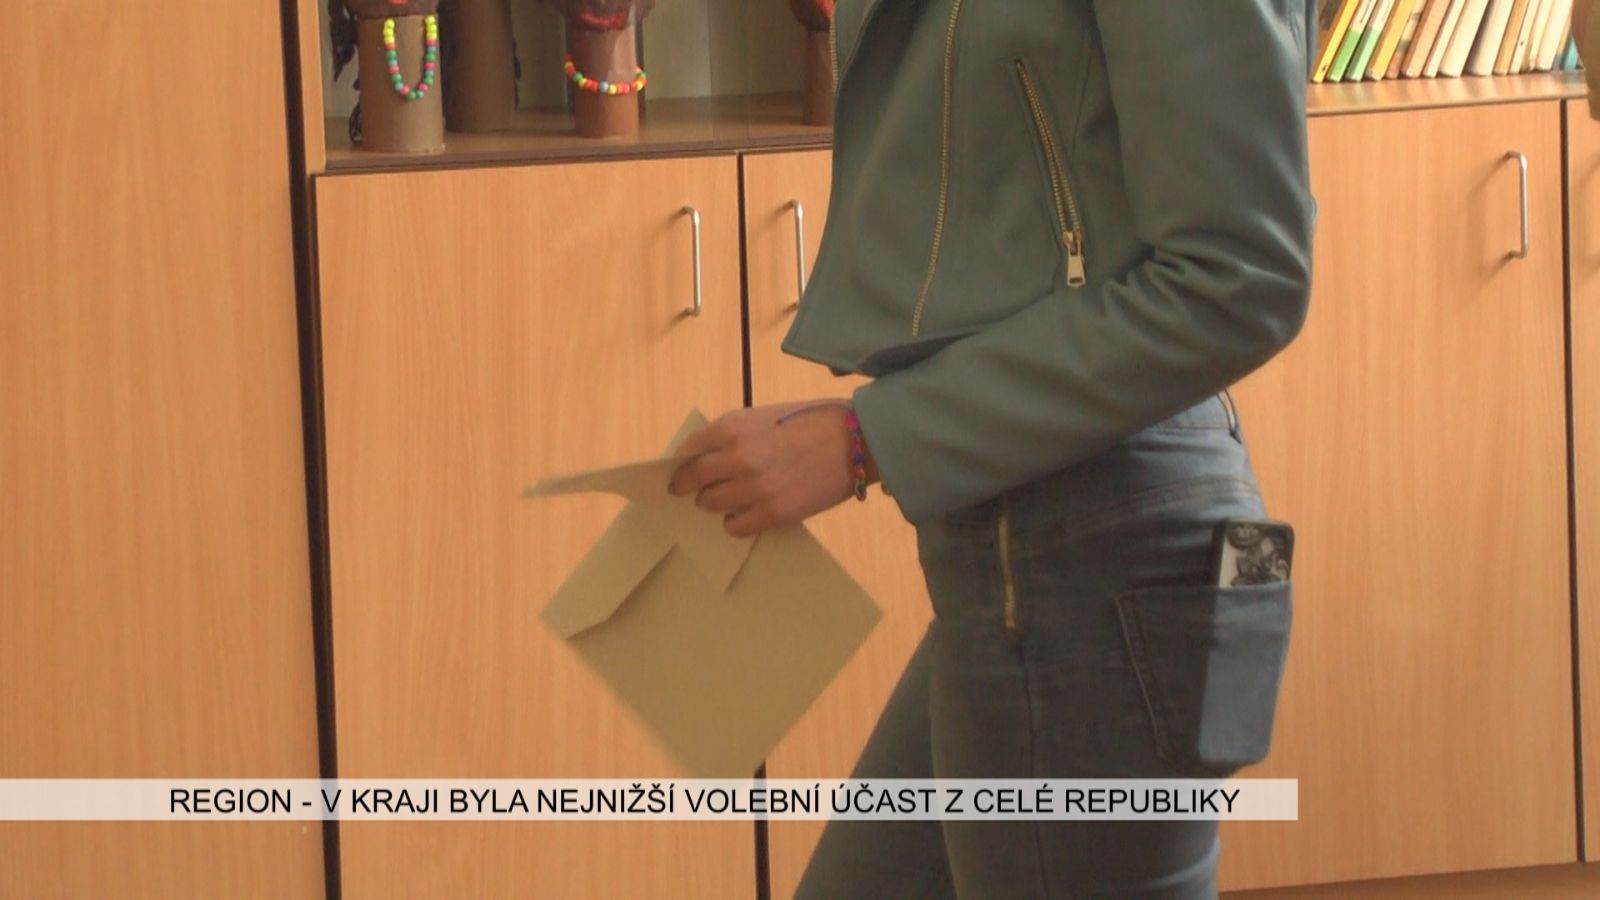 Region: V kraji byla nejnižší volební účast z celé republiky (TV Západ)